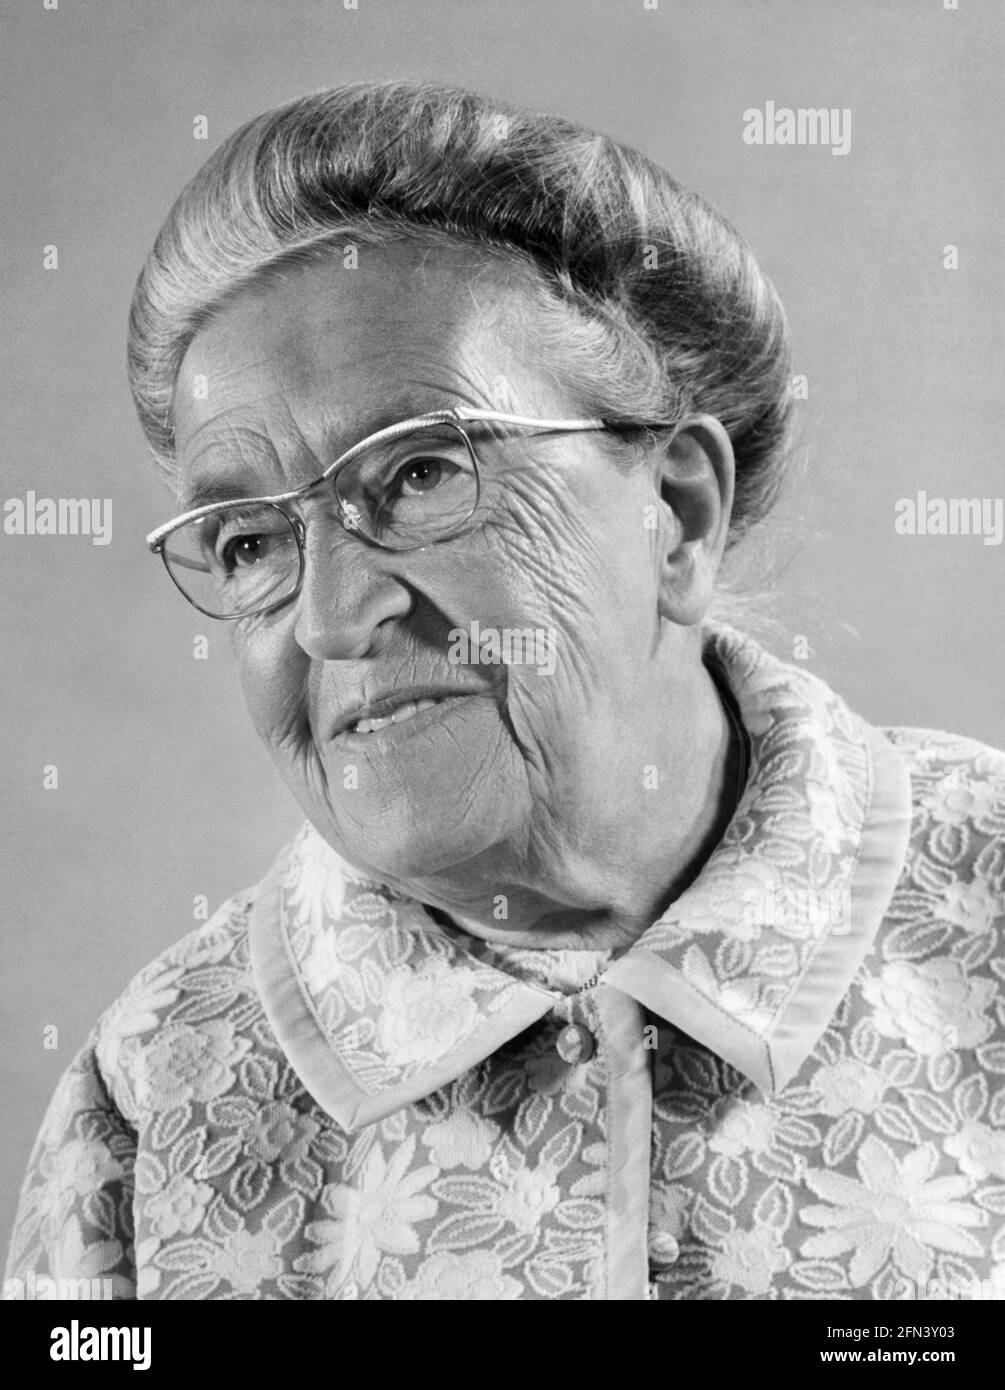 Corrie Ten Boom (1892-1983) était un horloger hollandais et un chrétien arrêté par les nazis pour avoir caché des Juifs pendant la Seconde Guerre mondiale Elle a été emprisonnée à Scheveningen quand des matériaux de résistance et des cartes de ration supplémentaires ont été trouvés dans sa maison. Après le procès, elle a été transférée dans deux camps de concentration. Sa libération finale du camp de concentration de Ravensbrück (on lui a dit plus tard) était le résultat d'une erreur cléricale et une semaine plus tard, les autres femmes de son groupe d'âge ont été envoyées aux chambres à gaz. Son livre de 1971 et le film de 1975, The Hiding place, présentent le travail de sa famille pour cacher les réfugiés pendant la Seconde Guerre mondiale Banque D'Images